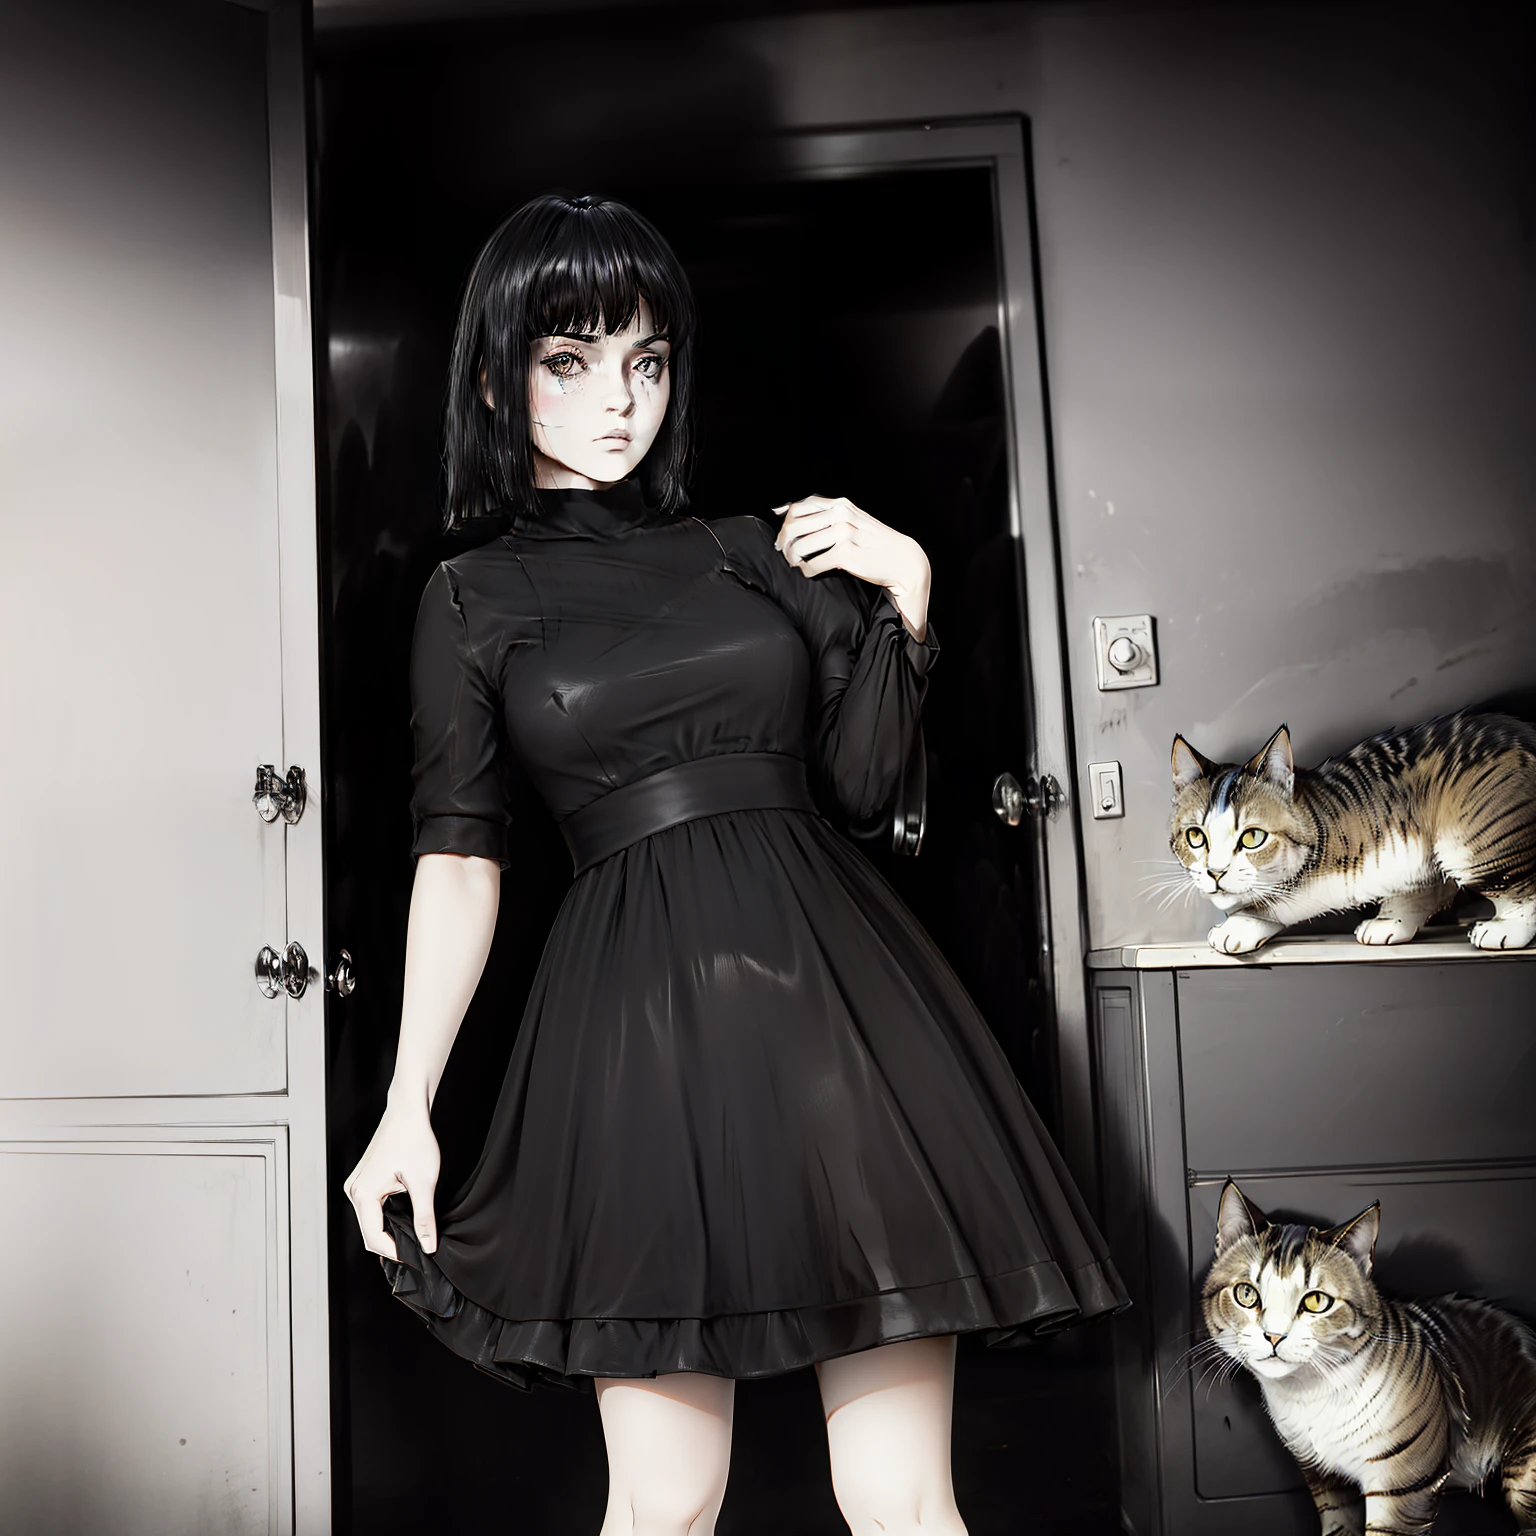 Pelo trenzado negro con cinta roja., piel blanca, ojos gris claro, vestido negro, sosteniendo un muñeco desgarrado de un gato